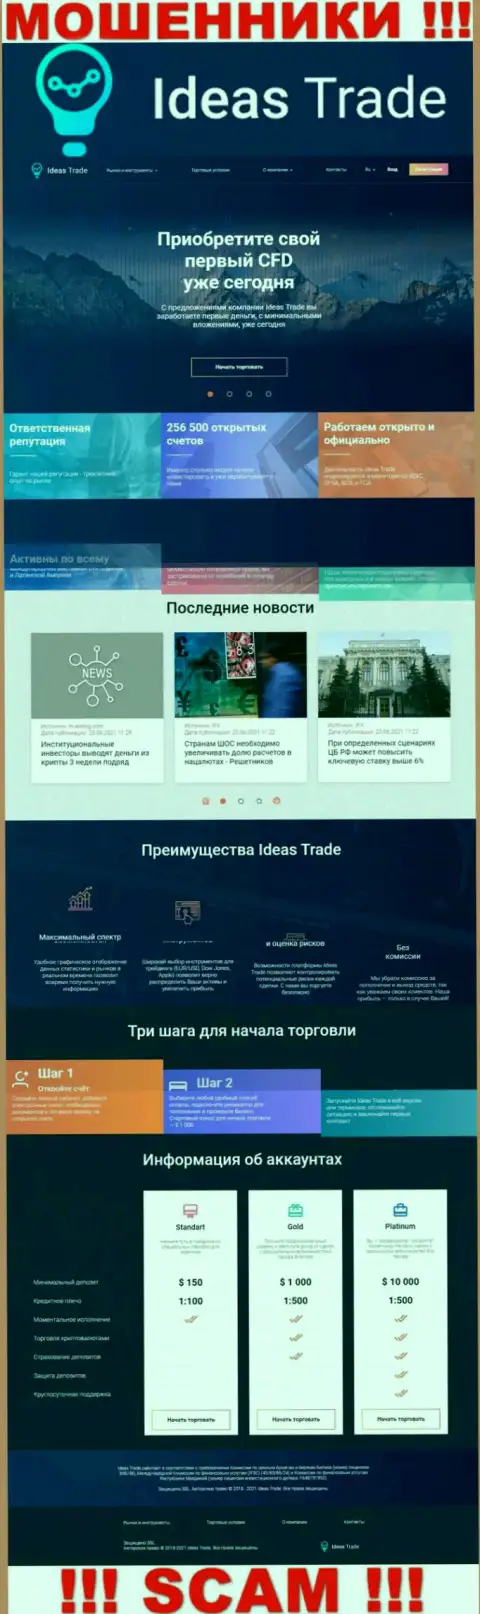 Официальный сайт мошенников ИдеасТрейд